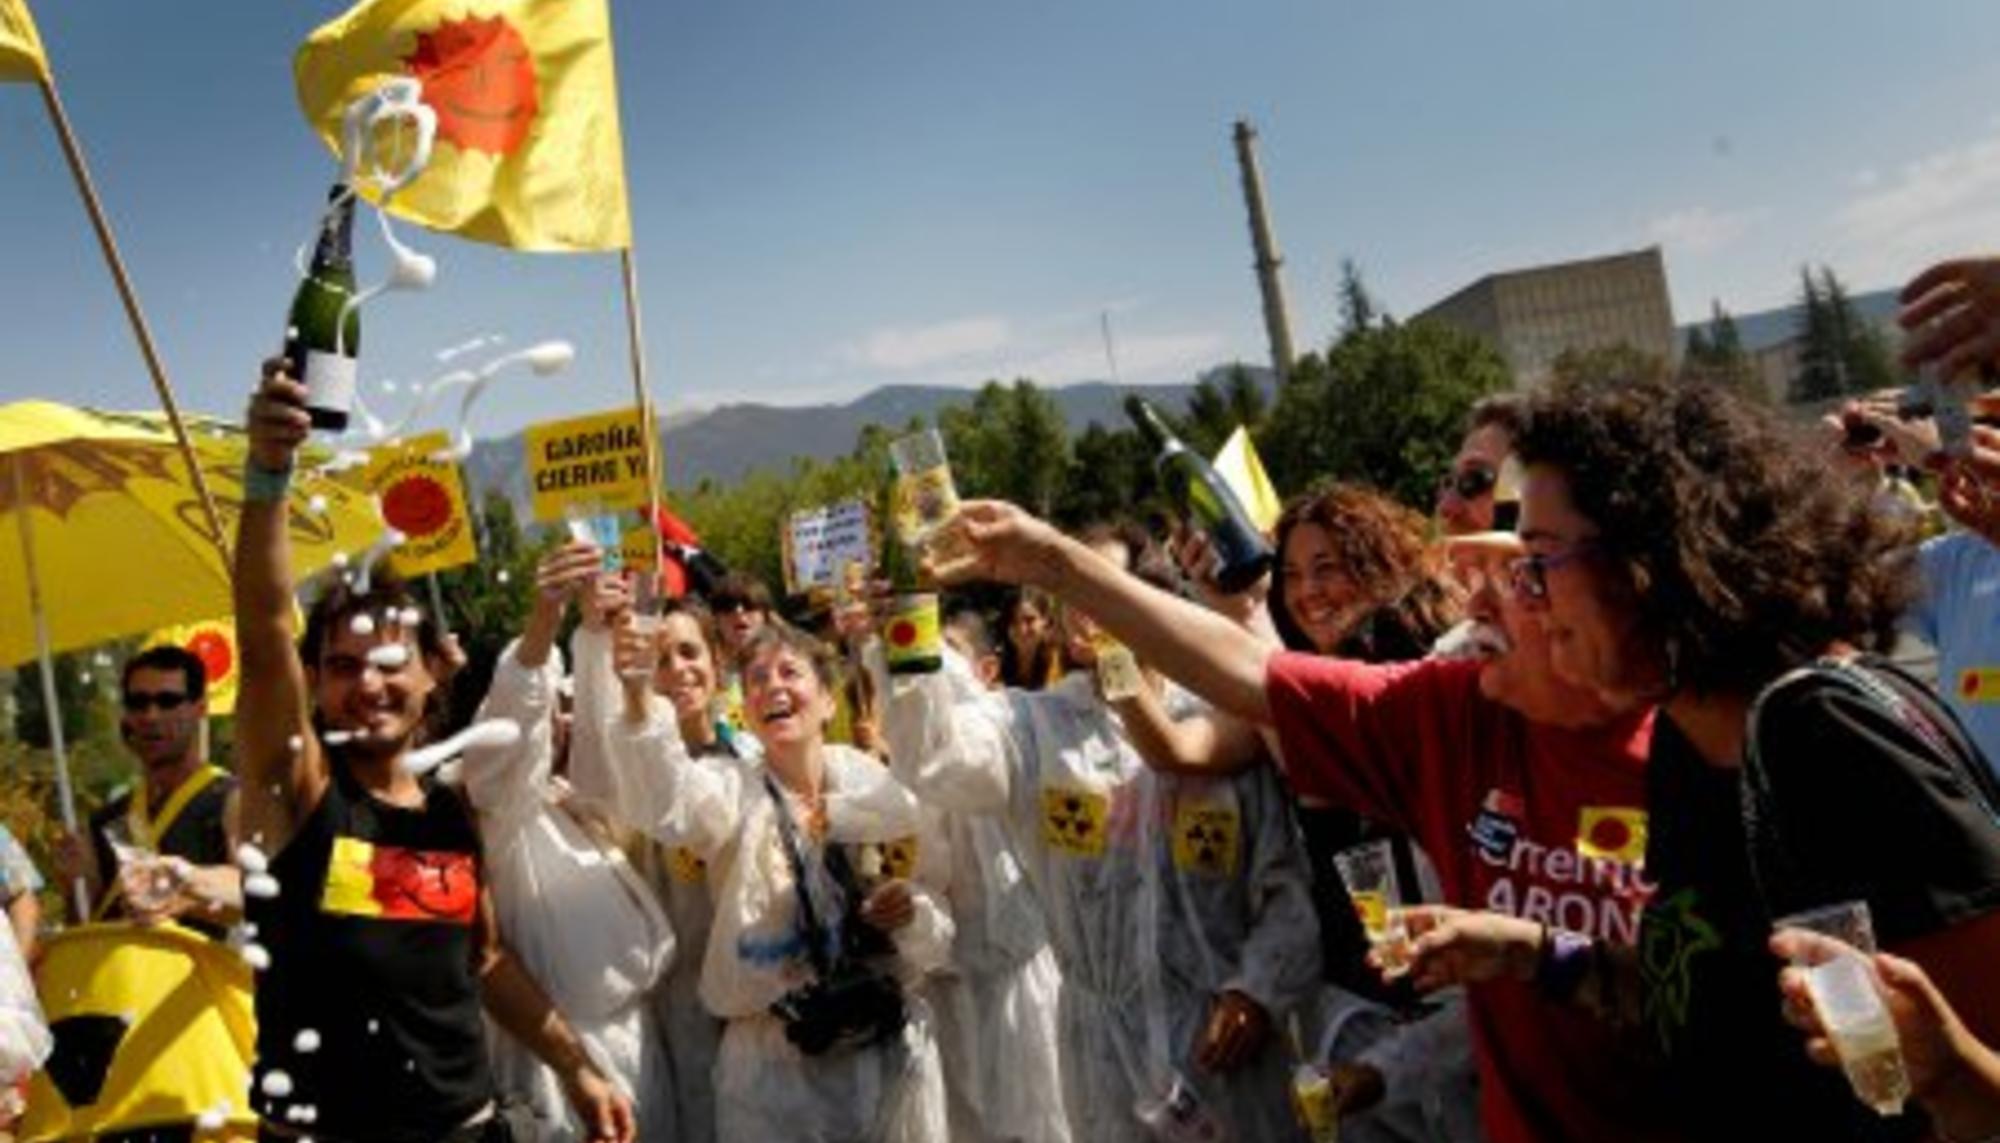 Activistas celebran el cierre de Garoña